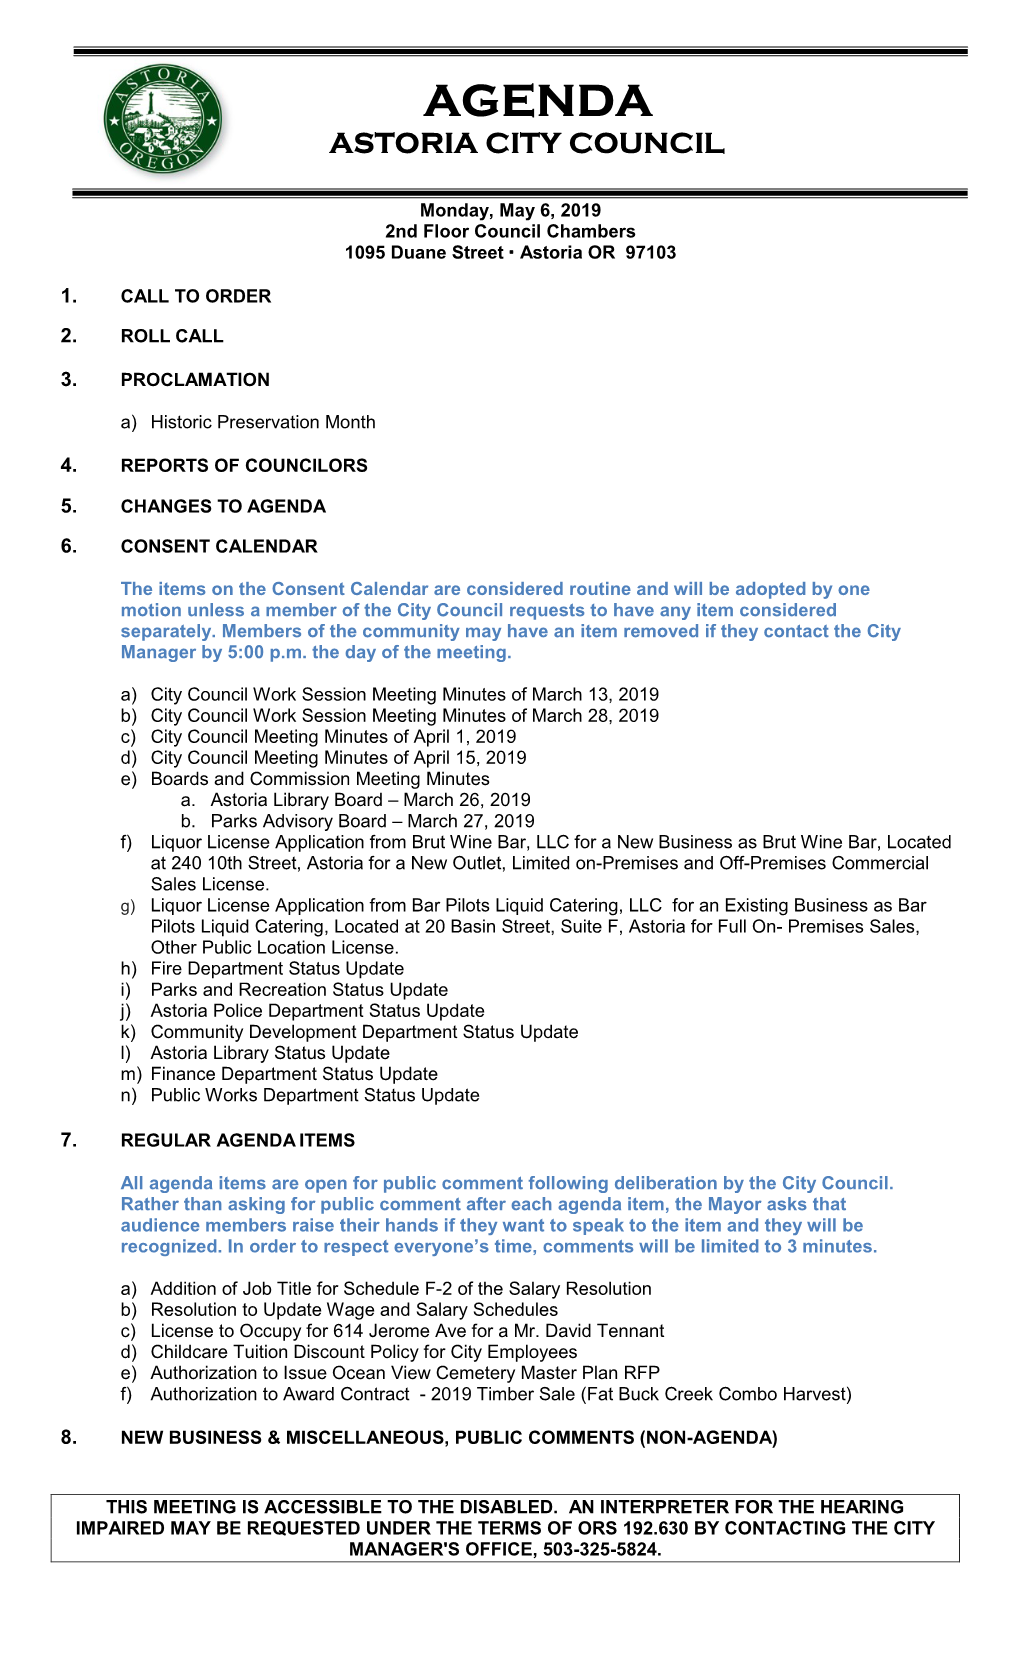 City Council Meeting Minutes of April 1, 2019 D) City Council Meeting Minutes of April 15, 2019 E) Boards and Commission Meeting Minutes A